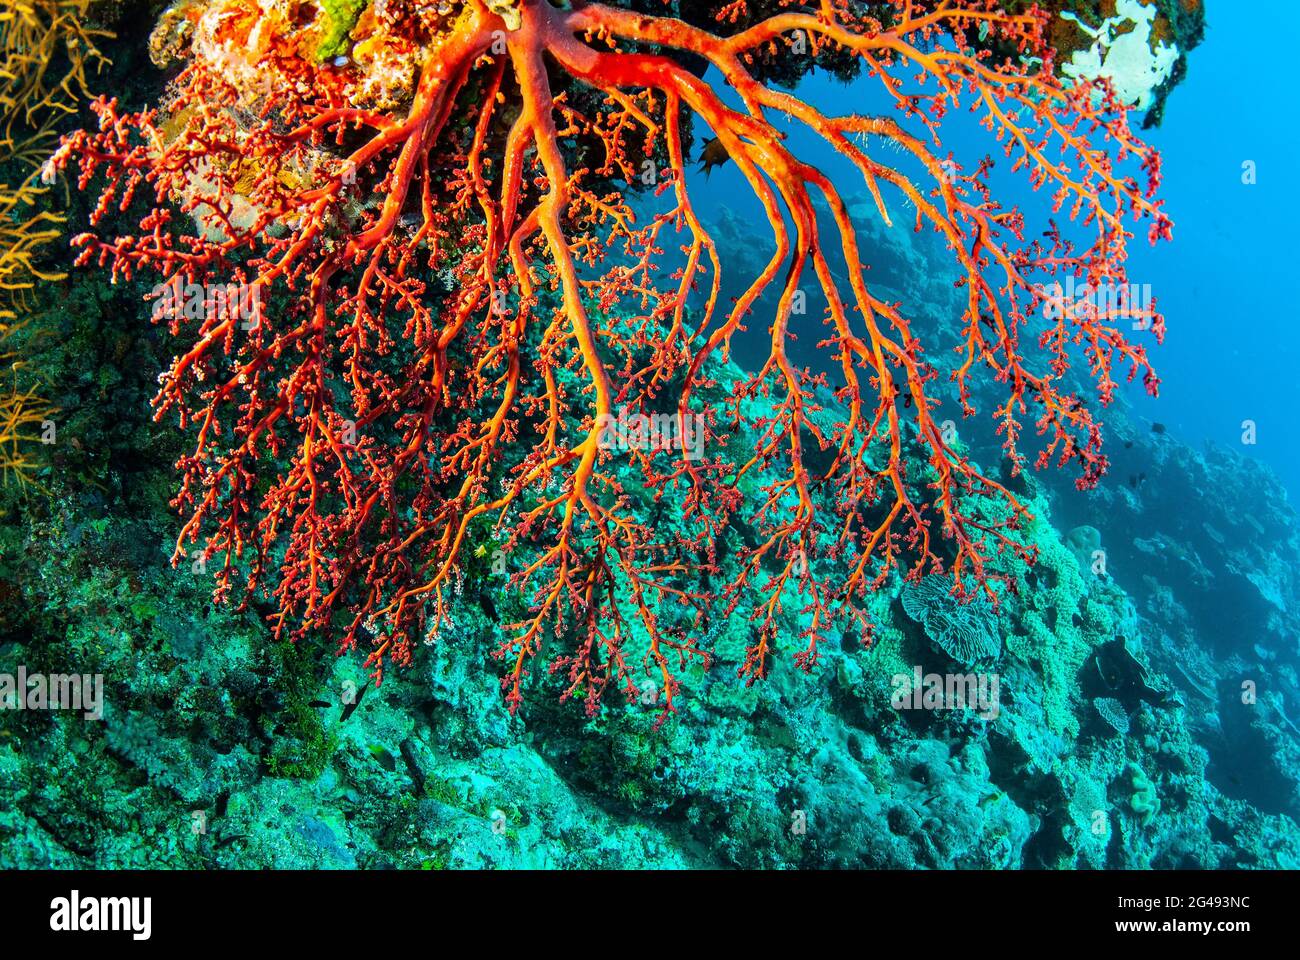 Red sea fan, polyps withdrawn, Solomon Islands Stock Photo